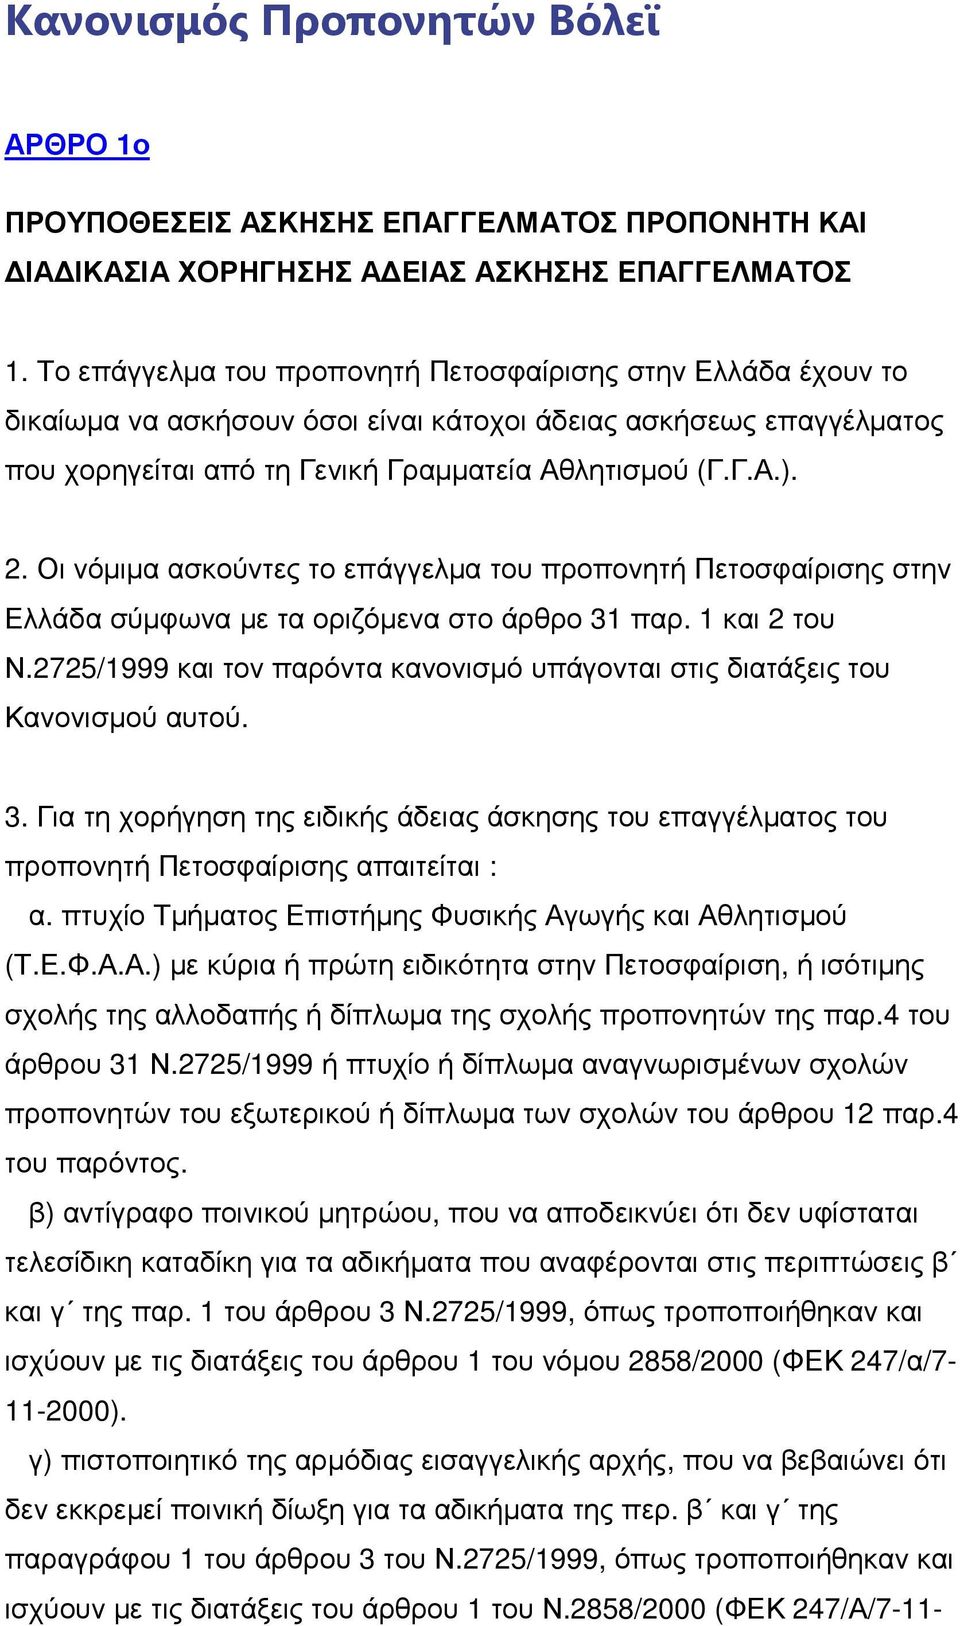 Οι νόµιµα ασκούντες το επάγγελµα του προπονητή Πετοσφαίρισης στην Ελλάδα σύµφωνα µε τα οριζόµενα στο άρθρο 31 παρ. 1 και 2 του Ν.